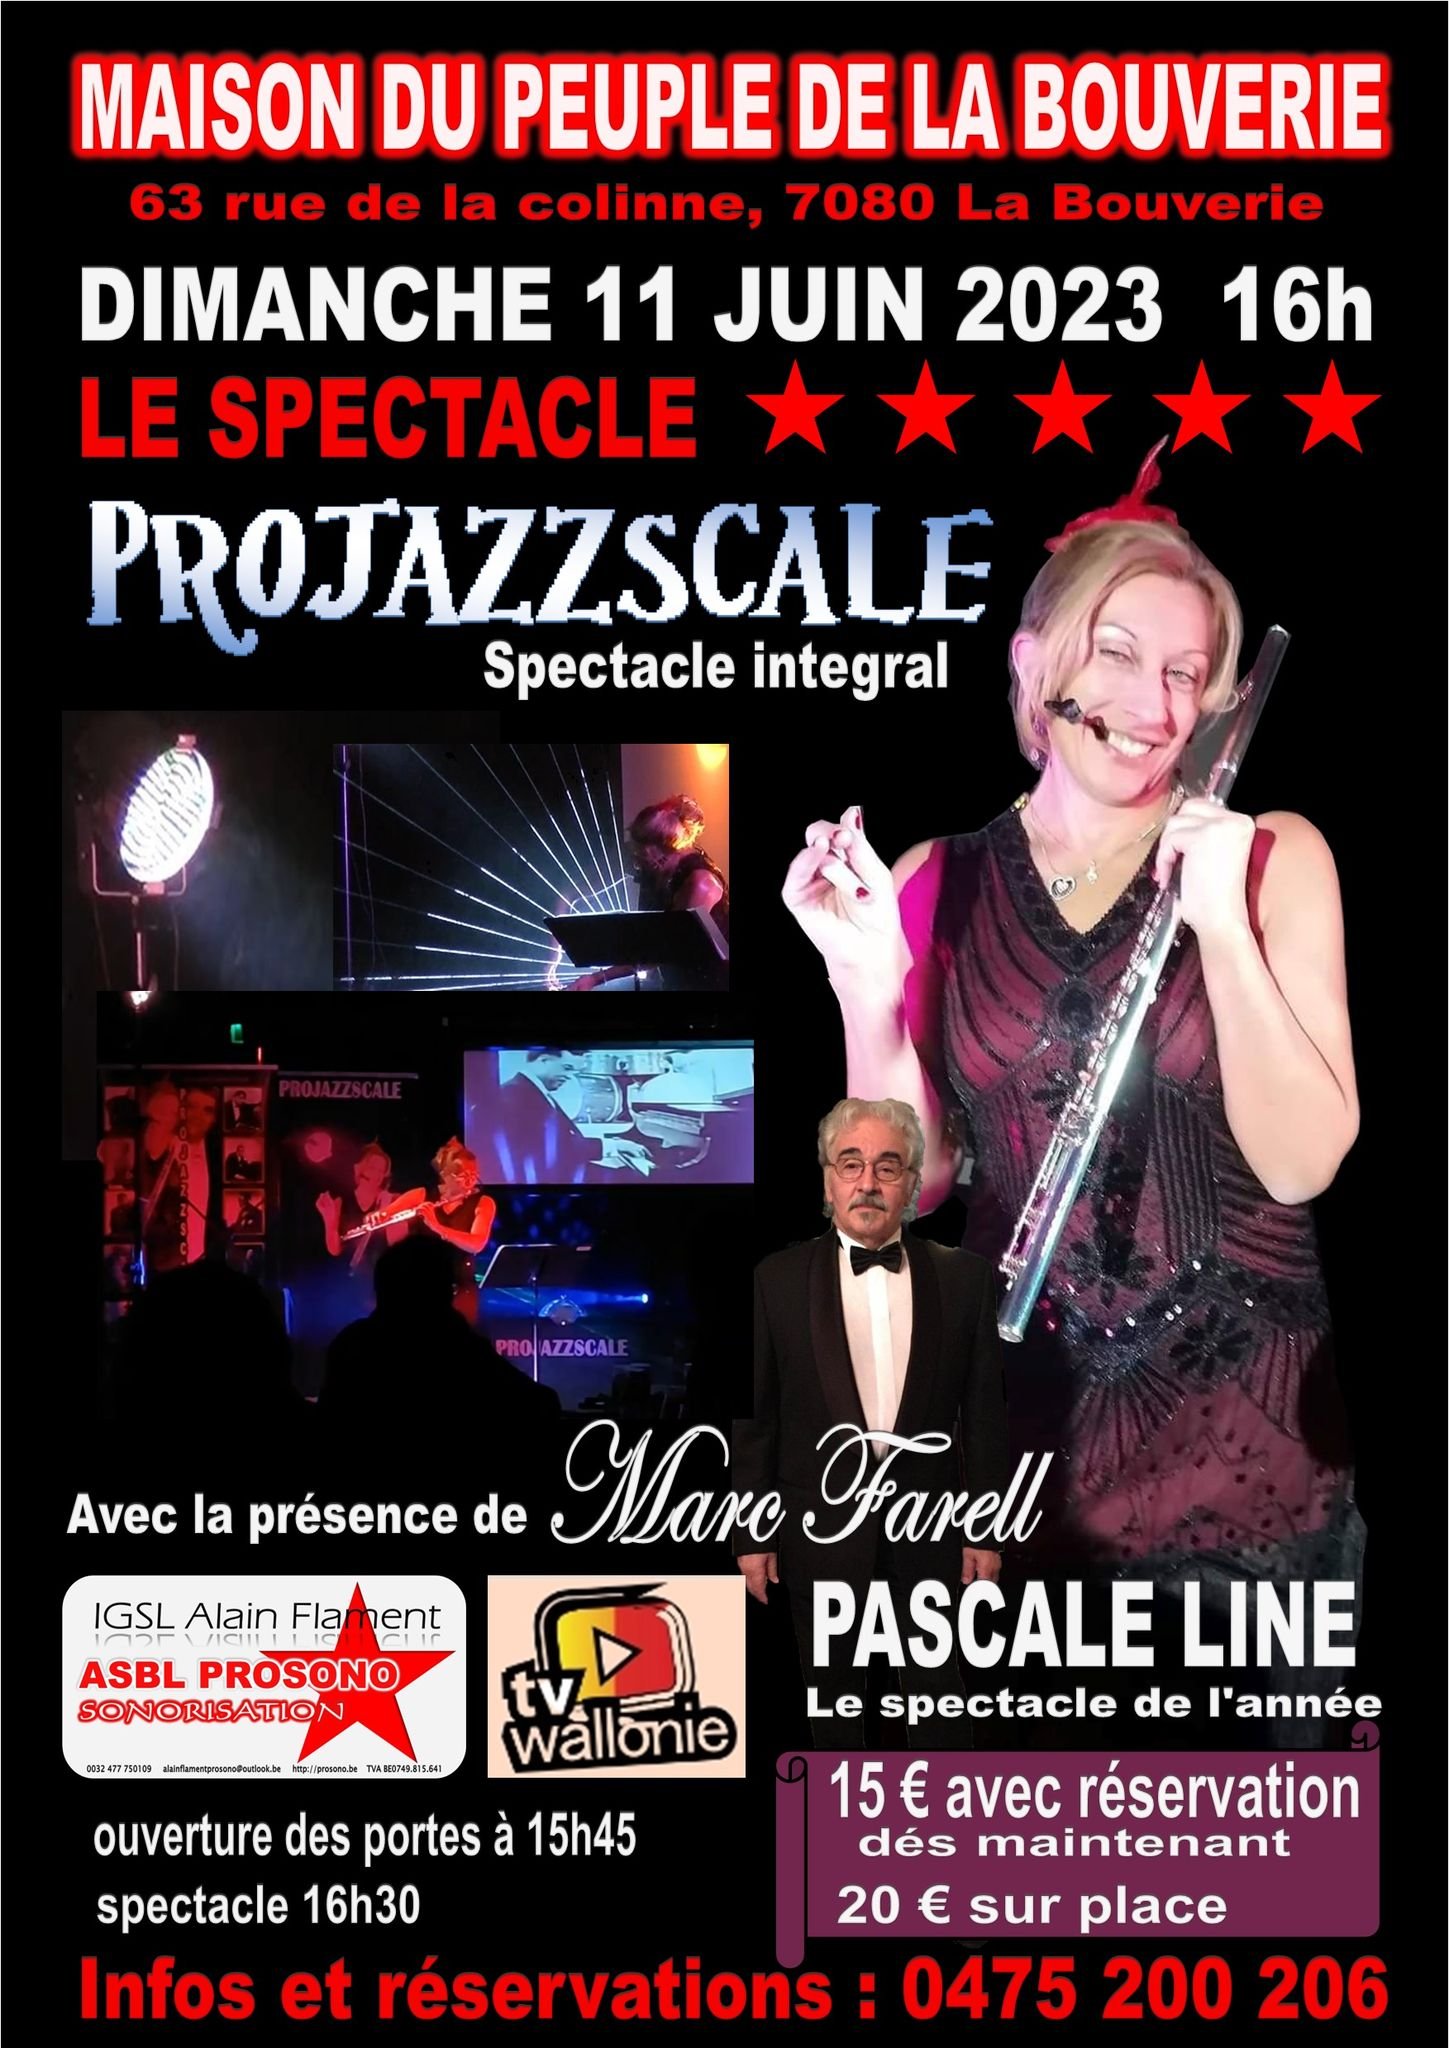 Pascale LINE en spectacle "PROJAZZSCALE " le 11 juin 2023 à 16h00